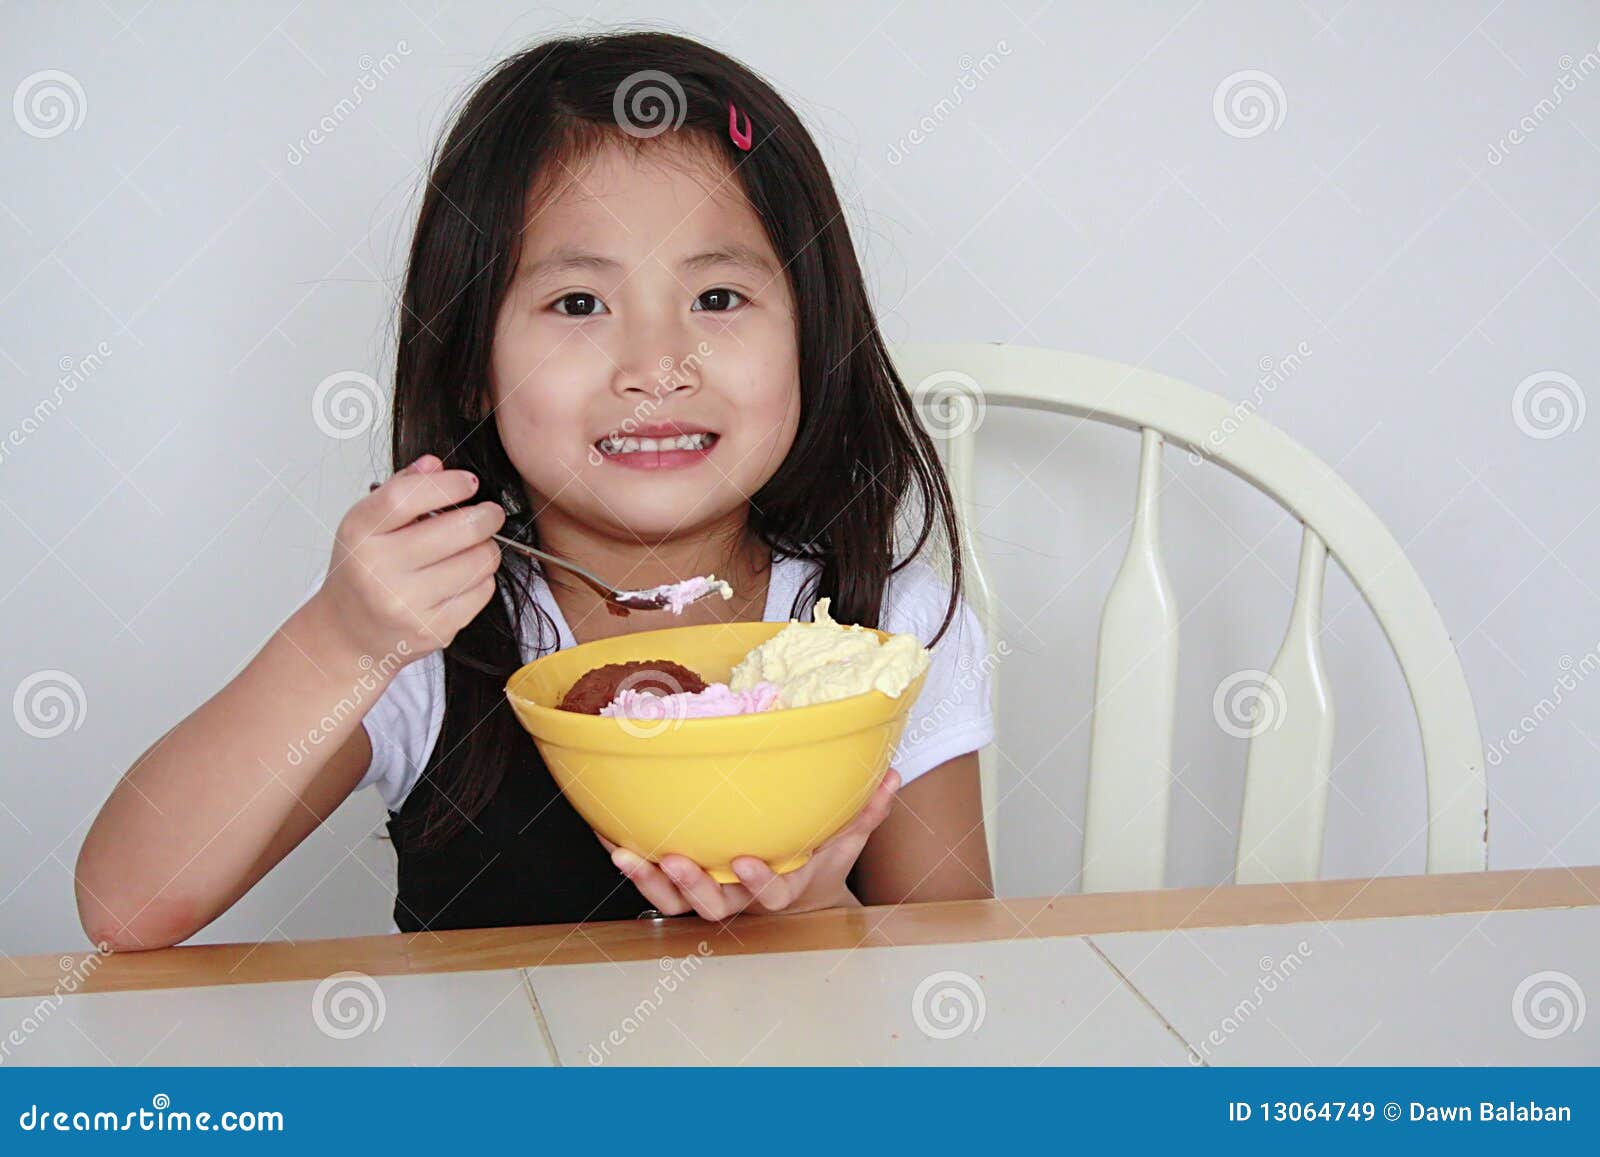 Asian Girl Eating Ice Cream Bowl Stock Image Image Of Dessert Meltling